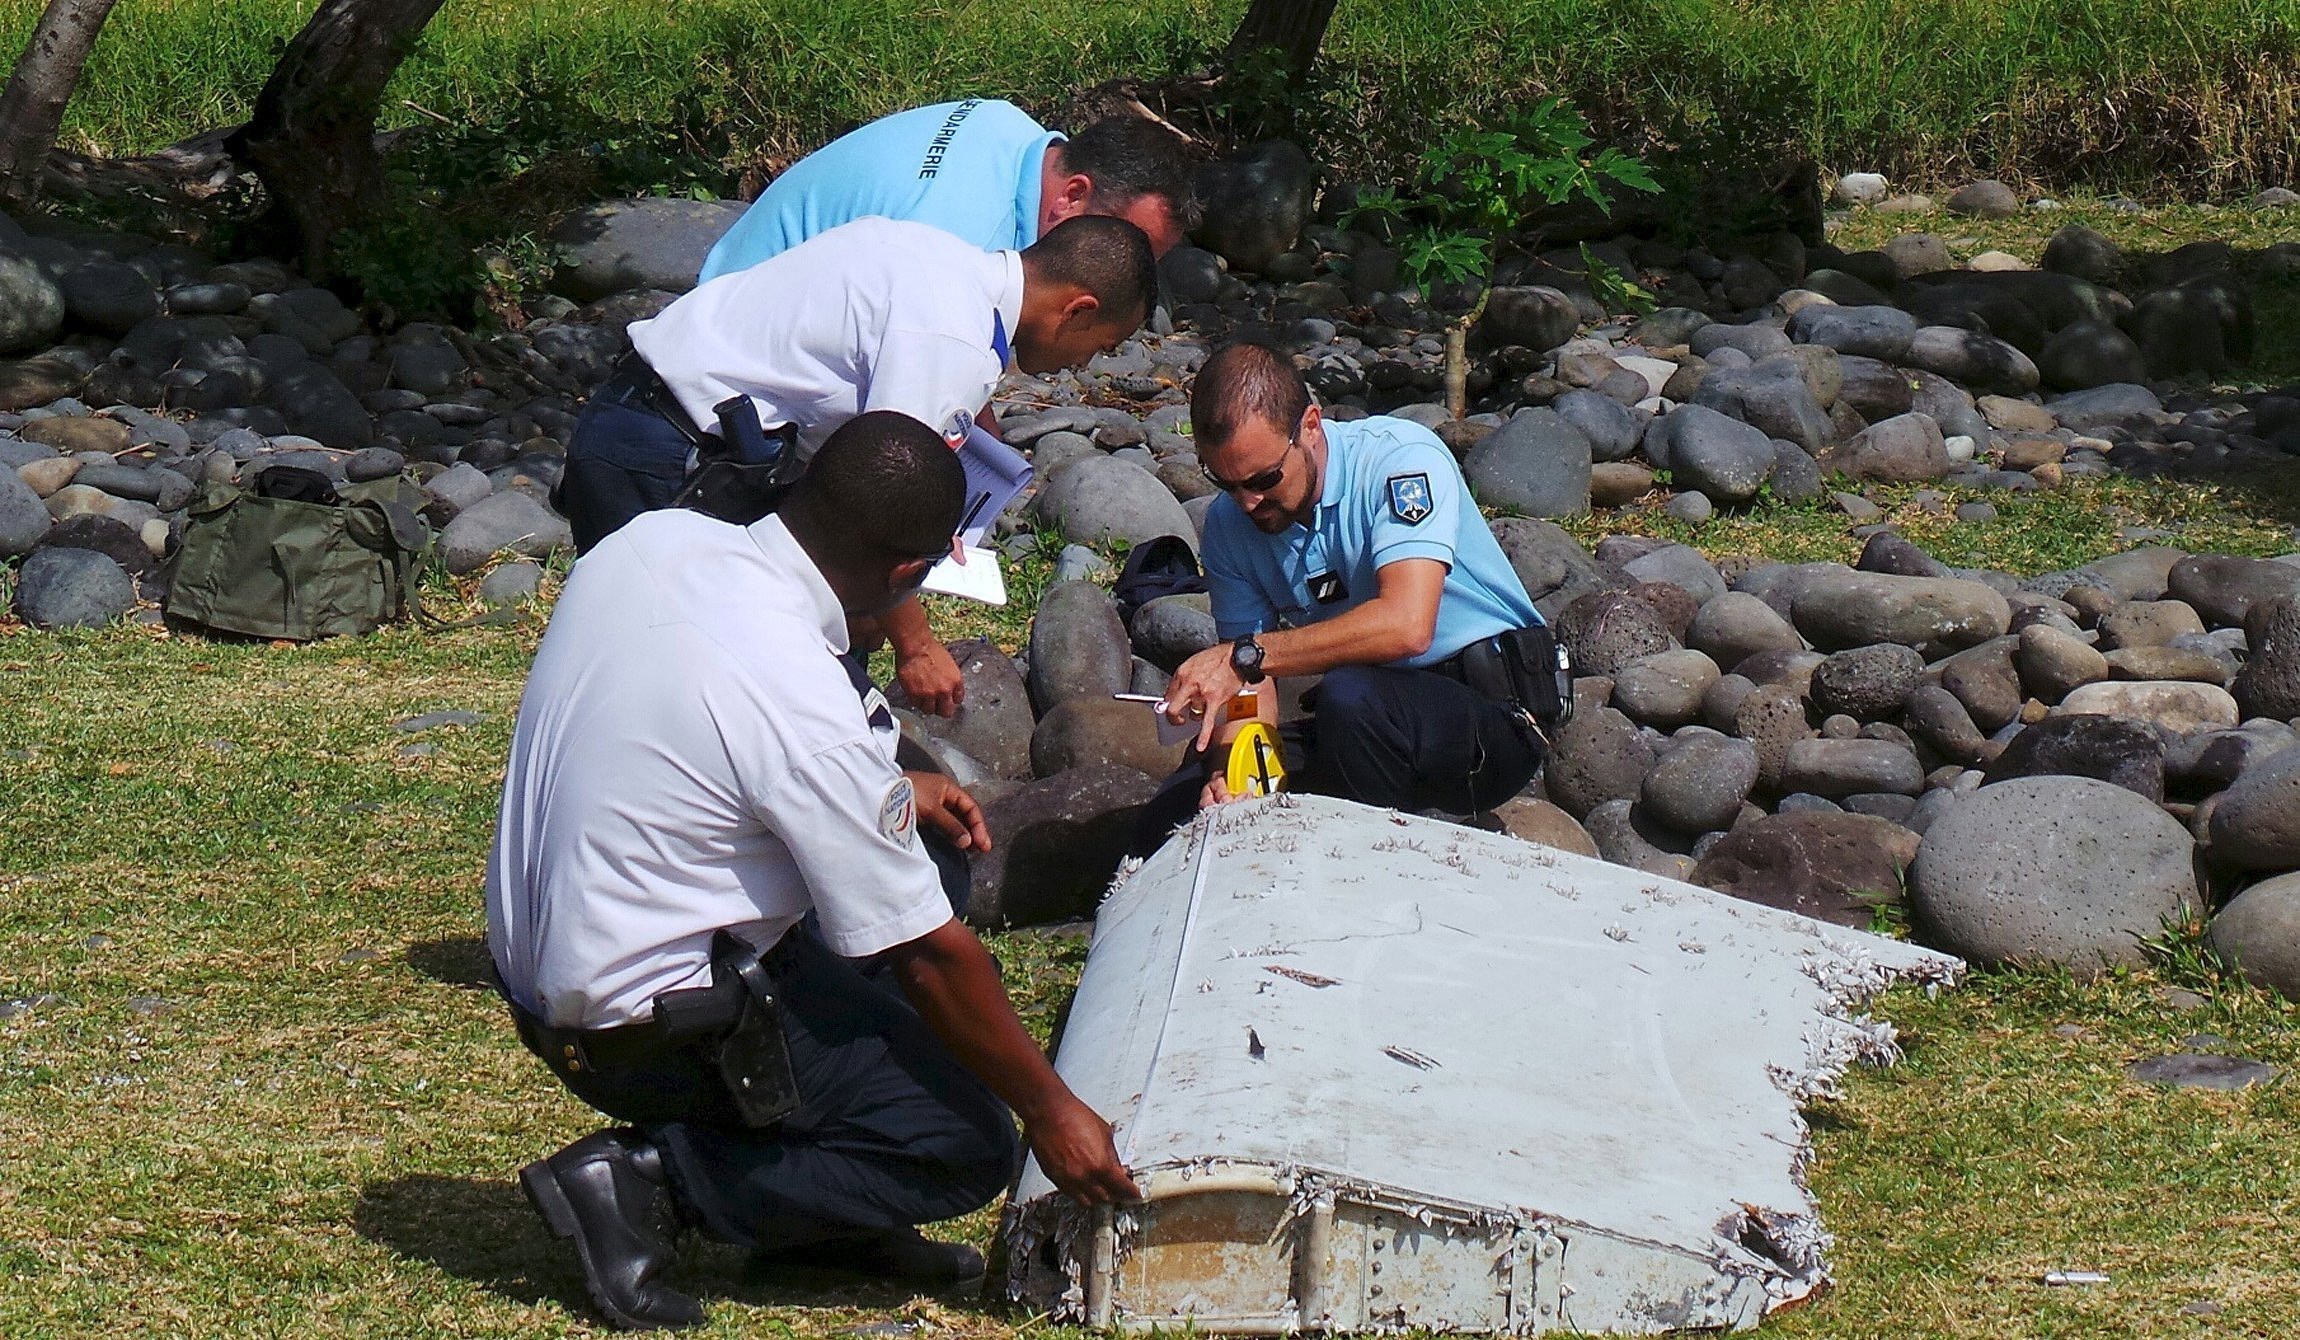 当地时间2015年7月29日，位于印度洋西南端的法属留尼汪岛发现疑似MH370残骸机翼残骸，当地居民称这块残骸长达2米，是在清理海滩时发现的，目击者称残骸表面覆盖有贝壳，显然在水中浸泡过很长时间。